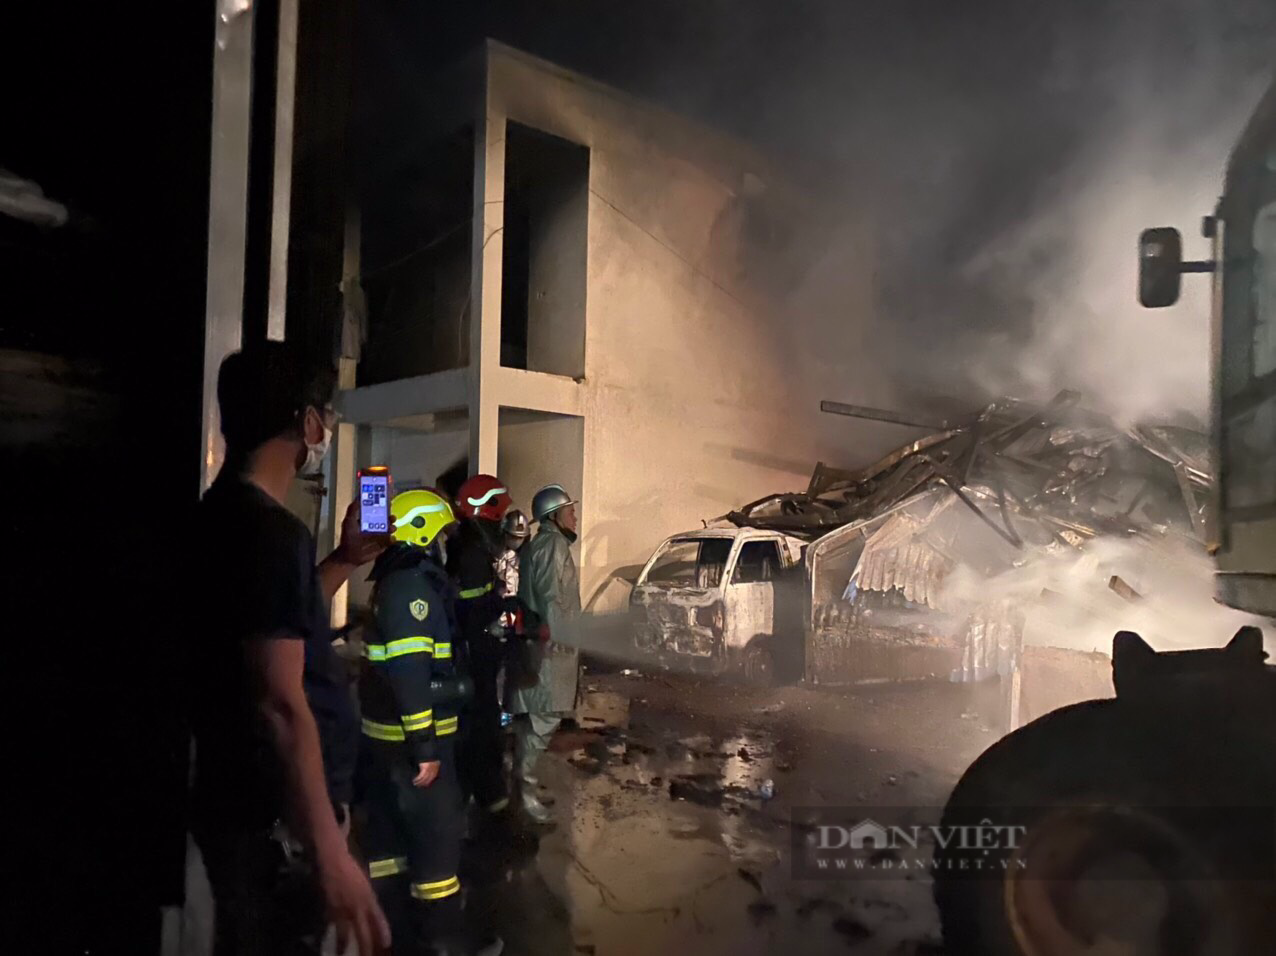 Hà Nội: Hé lộ nguyên nhân vụ cháy cực lớn ở nhà xưởng 2.000m2 trong đêm, nhiều tài sản bị thiêu rụi - Ảnh 2.